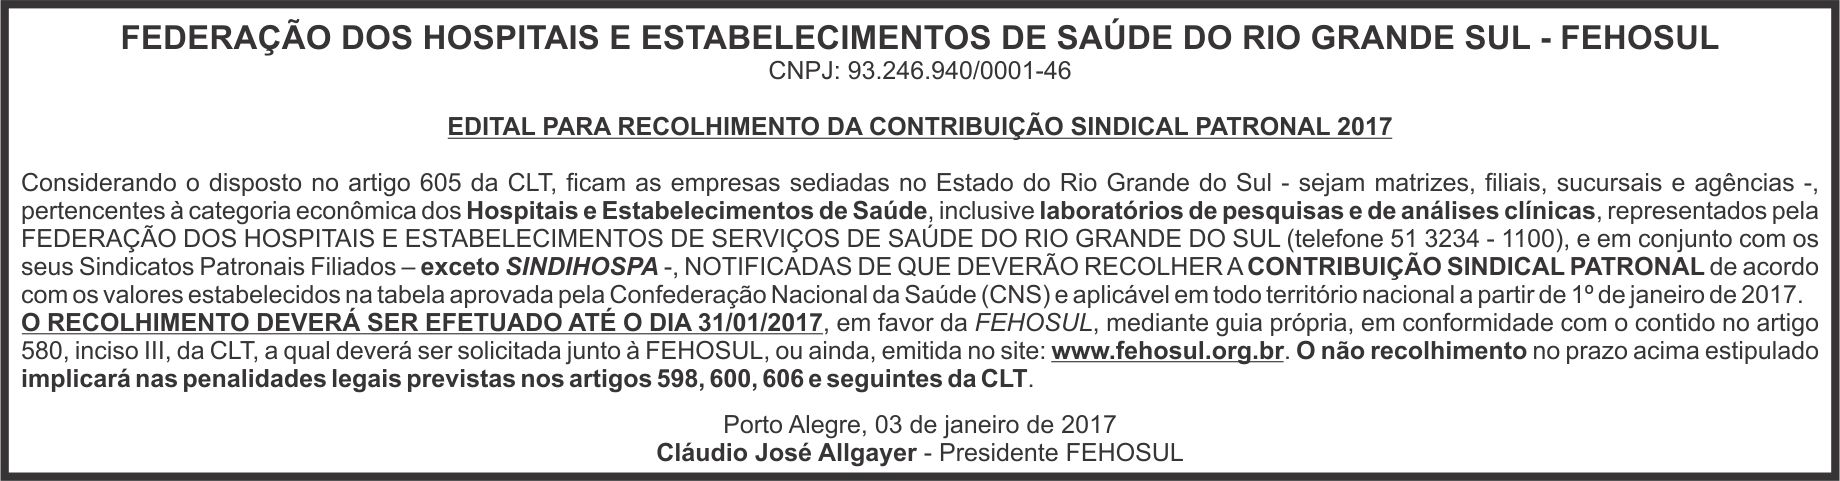 01_03_2017_edital_recolhimento_contribuição_Jornal_Comercio